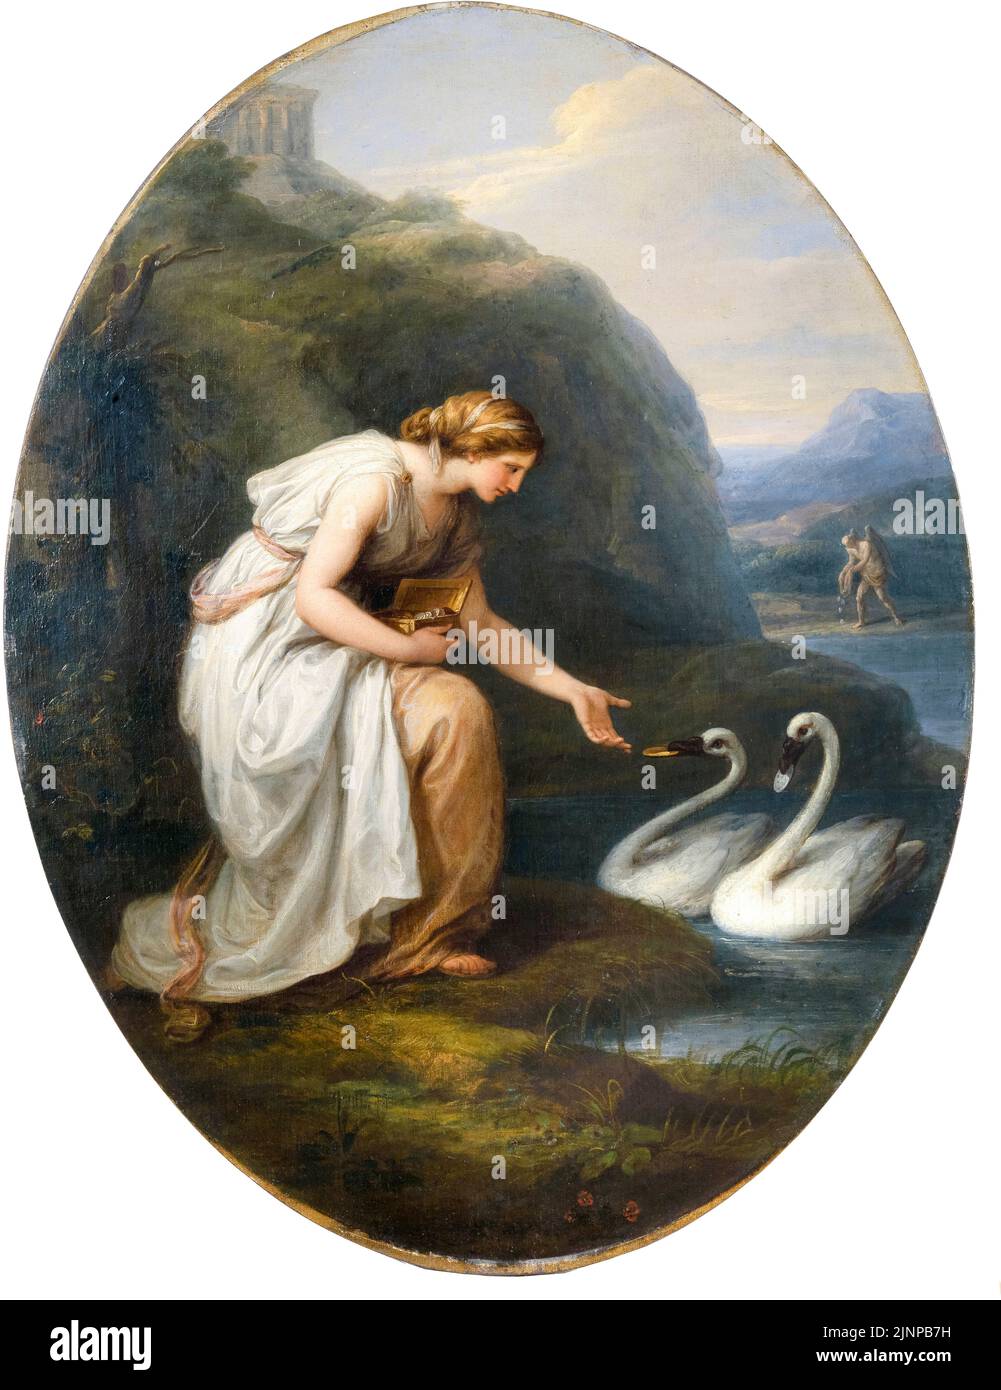 Angelica Kaufmann, Immortalia, la nymphe de l'immortalité, recevant des plaques d'identité de deux cygnes, peindre dans l'huile sur toile montée sur panneau, avant 1807 Banque D'Images